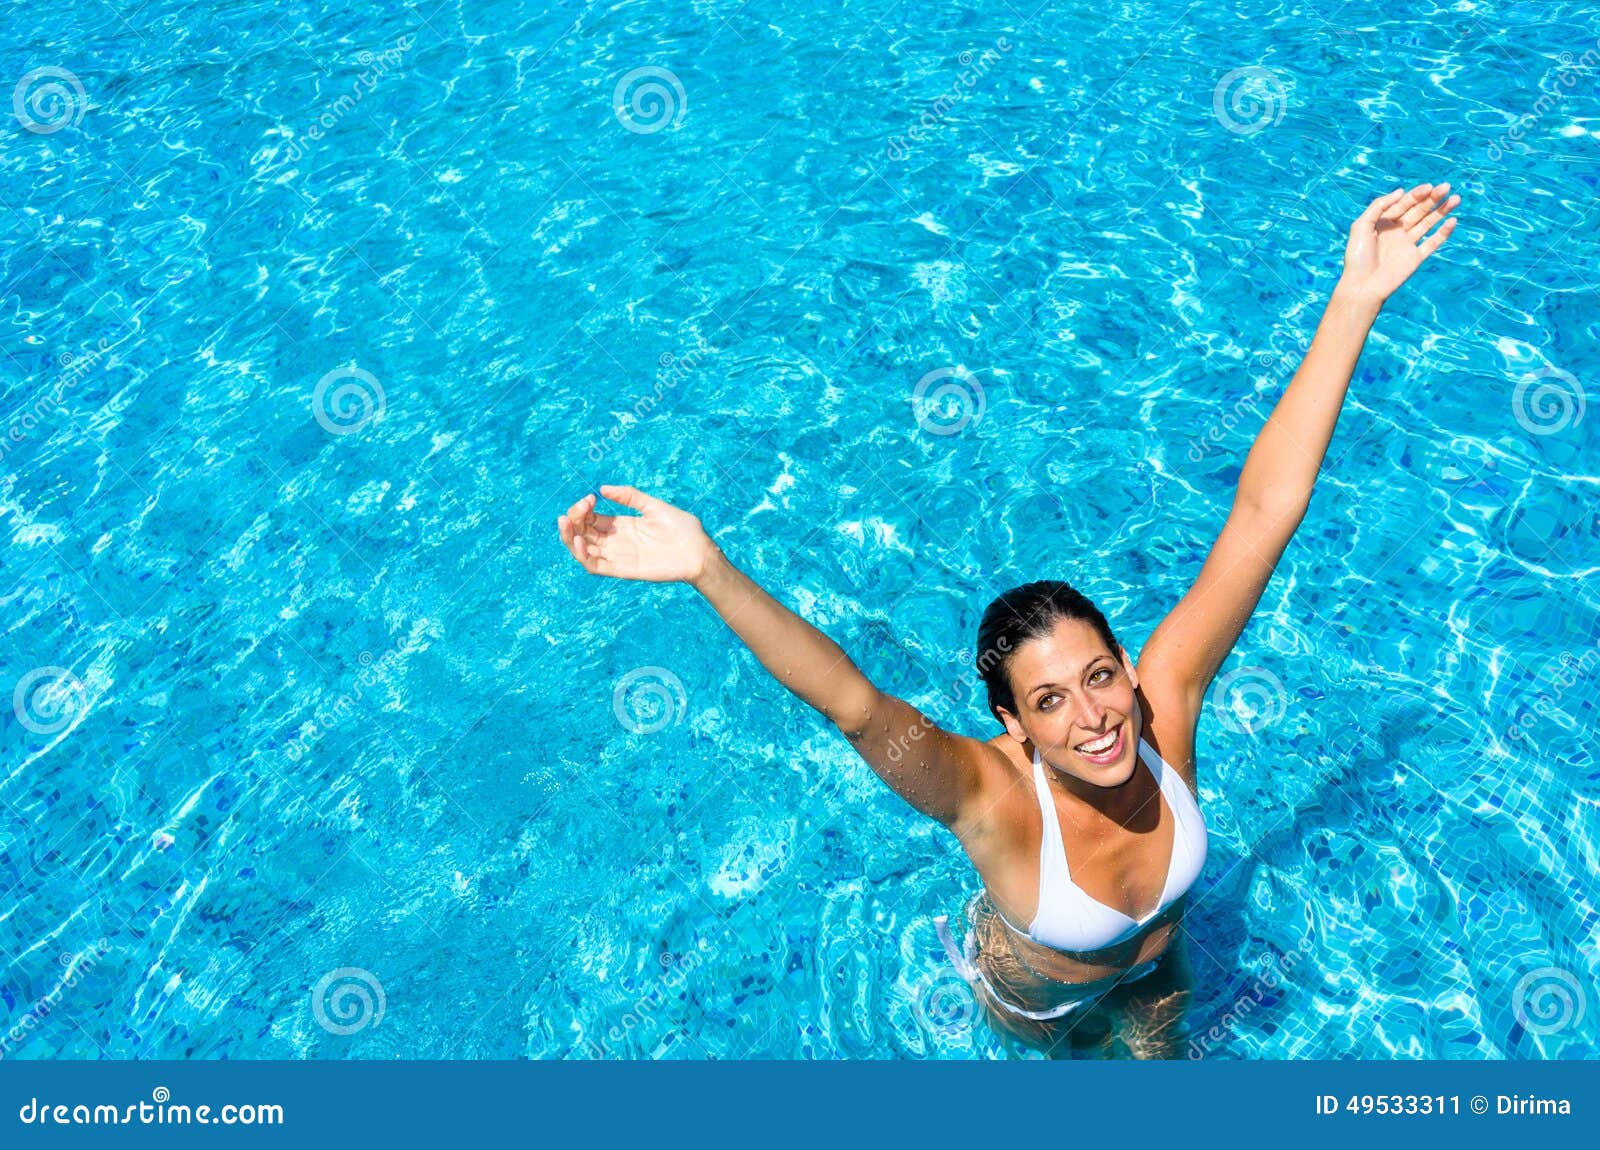 Joyful Woman Having Fun In Swimming Pool Stock Image Image Of Pool